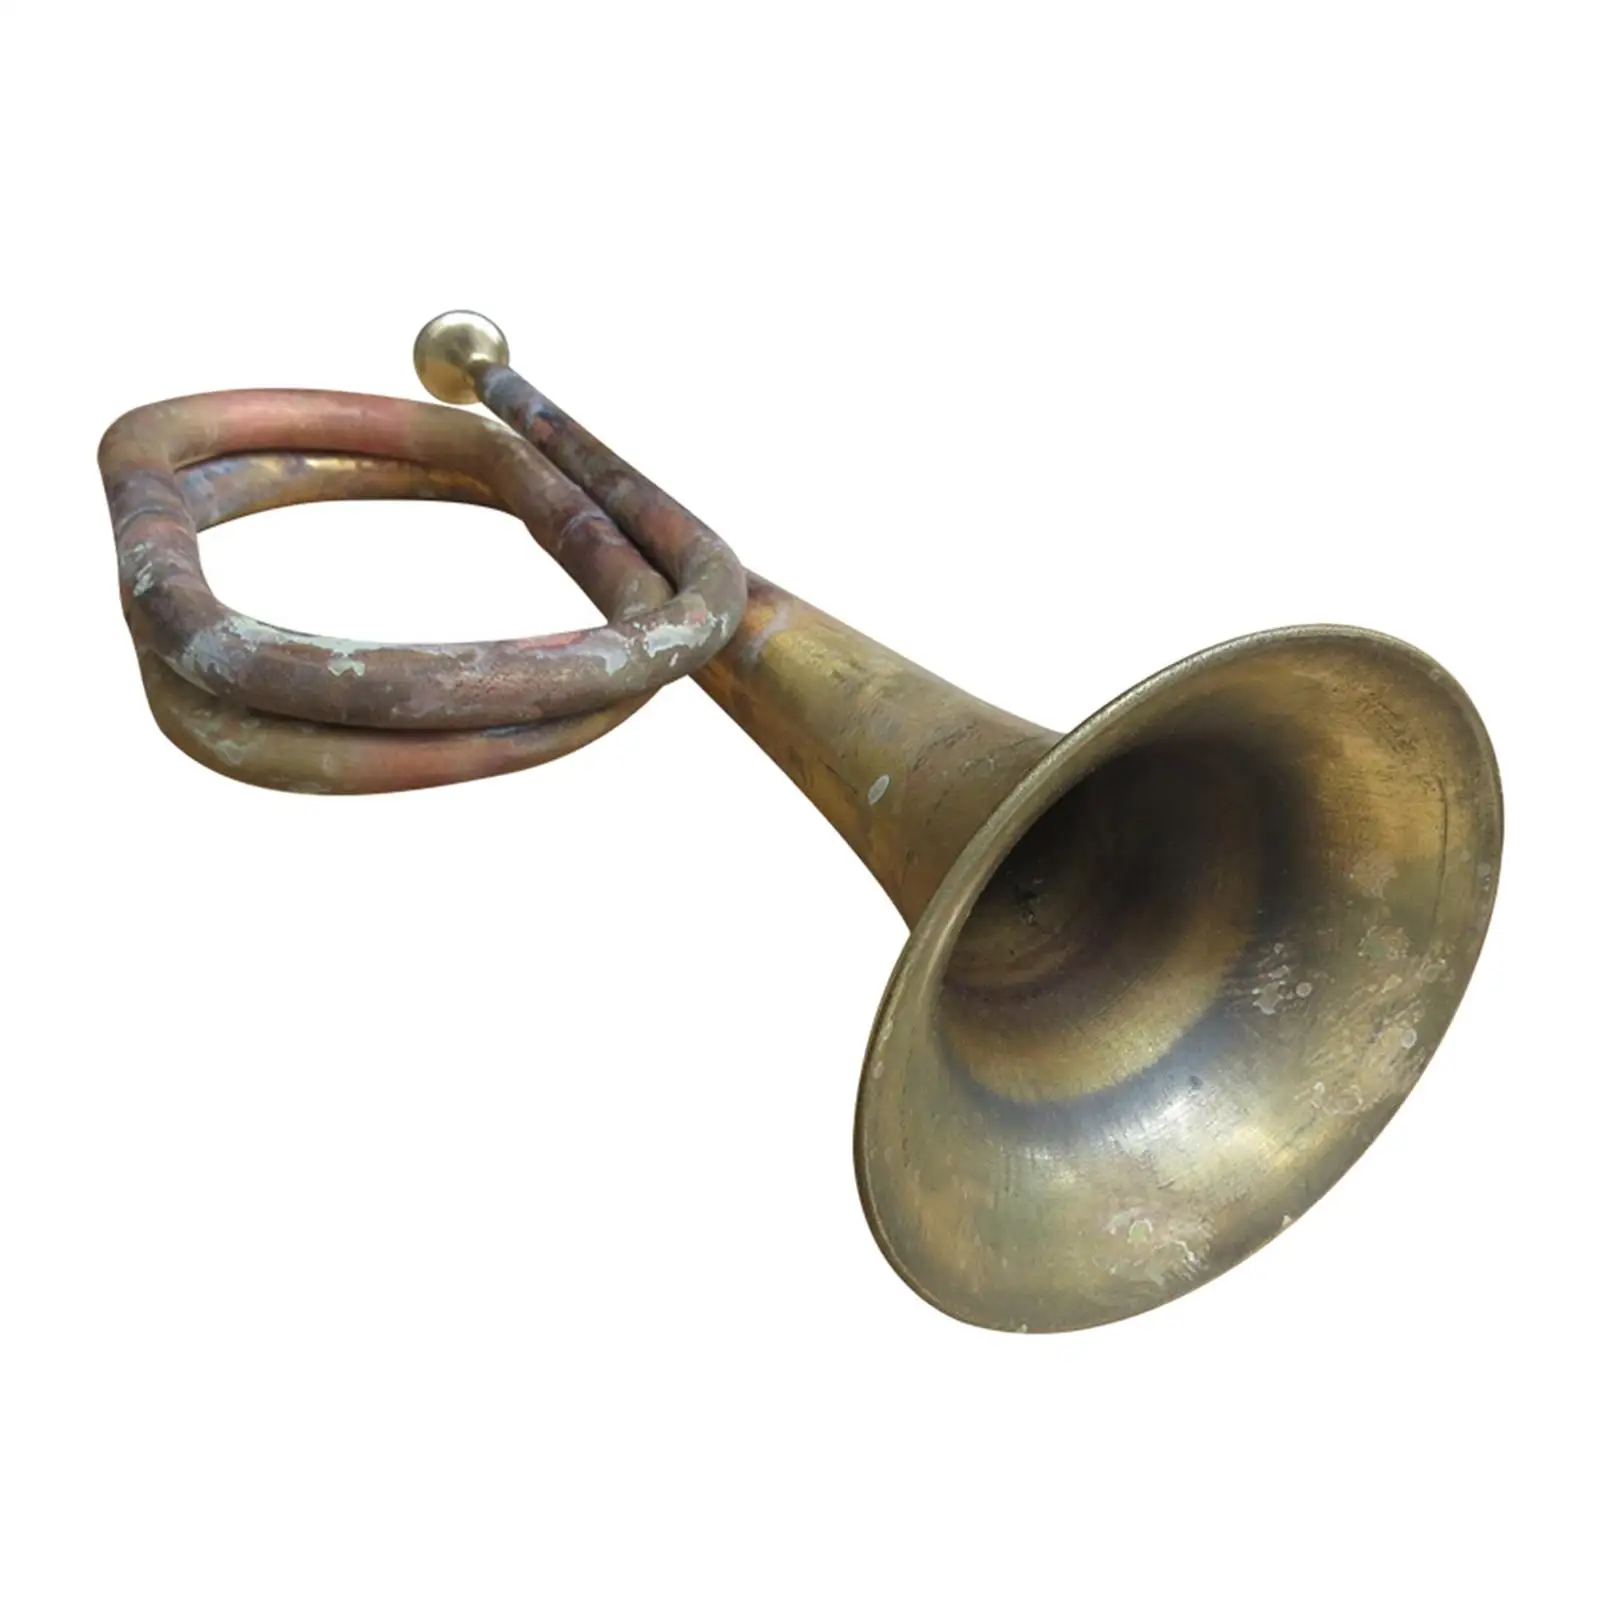 Музыкальный инструмент для марширования с горном в классическом стиле, 12,60 дюймов, выдувной горн Scout